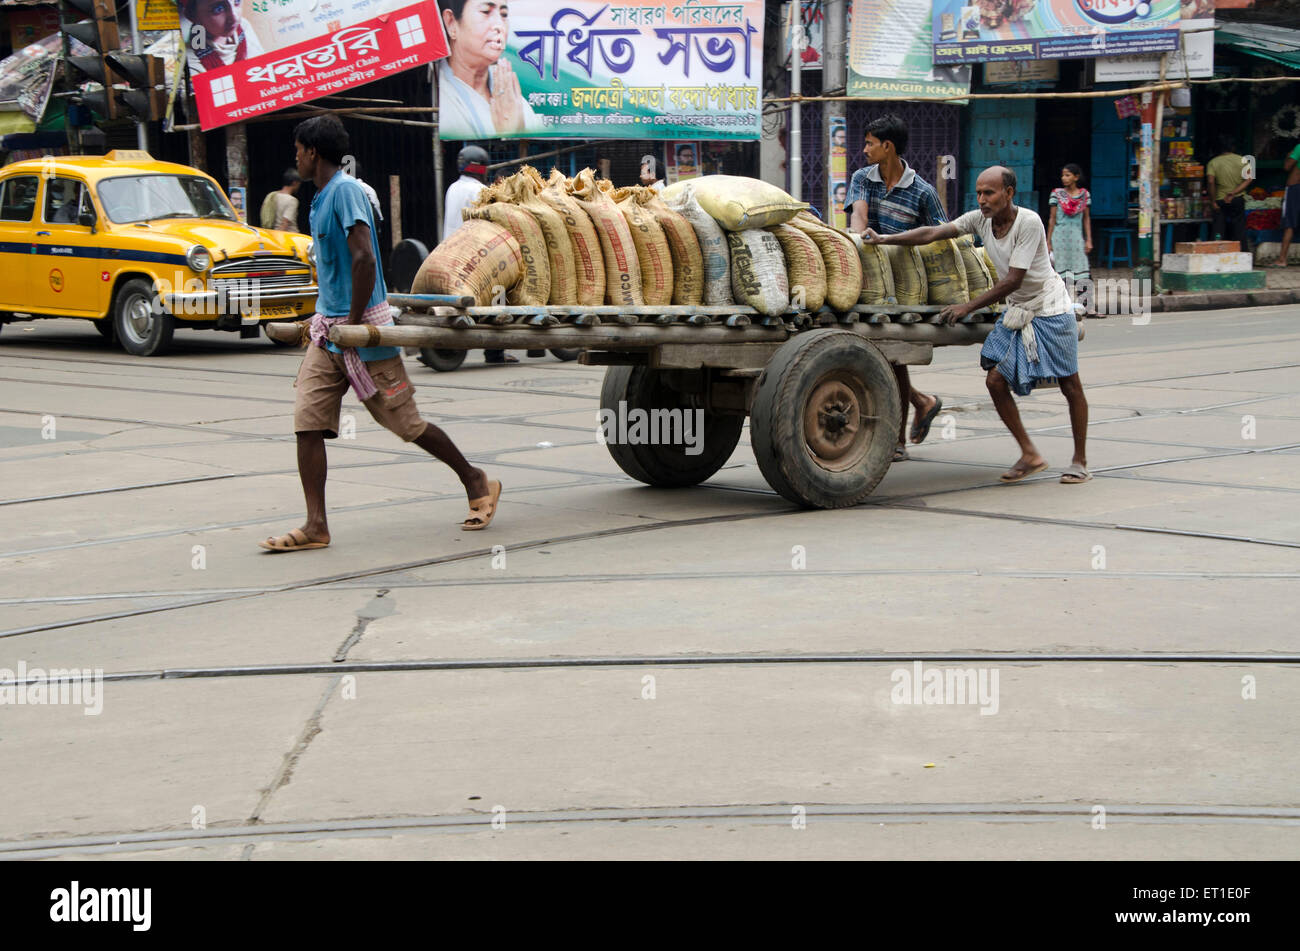 Hommes portant des bottes de ciment sur charrette Kolkata West Bengal India Asie Banque D'Images